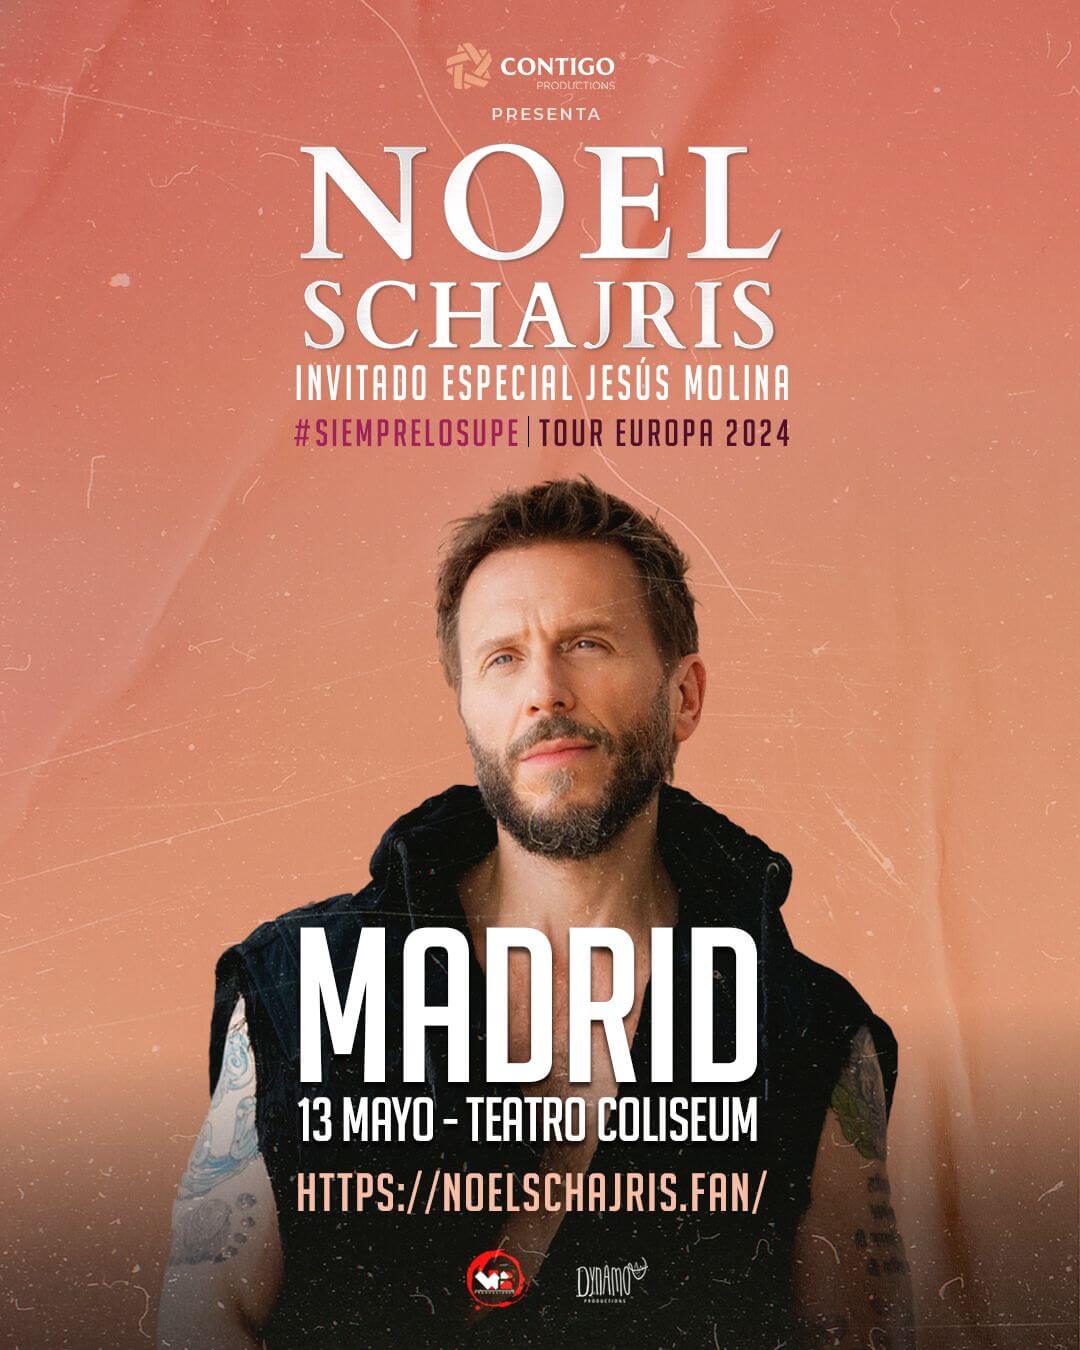 Noel Schajris en Concierto, Madrid, Mayo 13 2024, compra entradas aquí